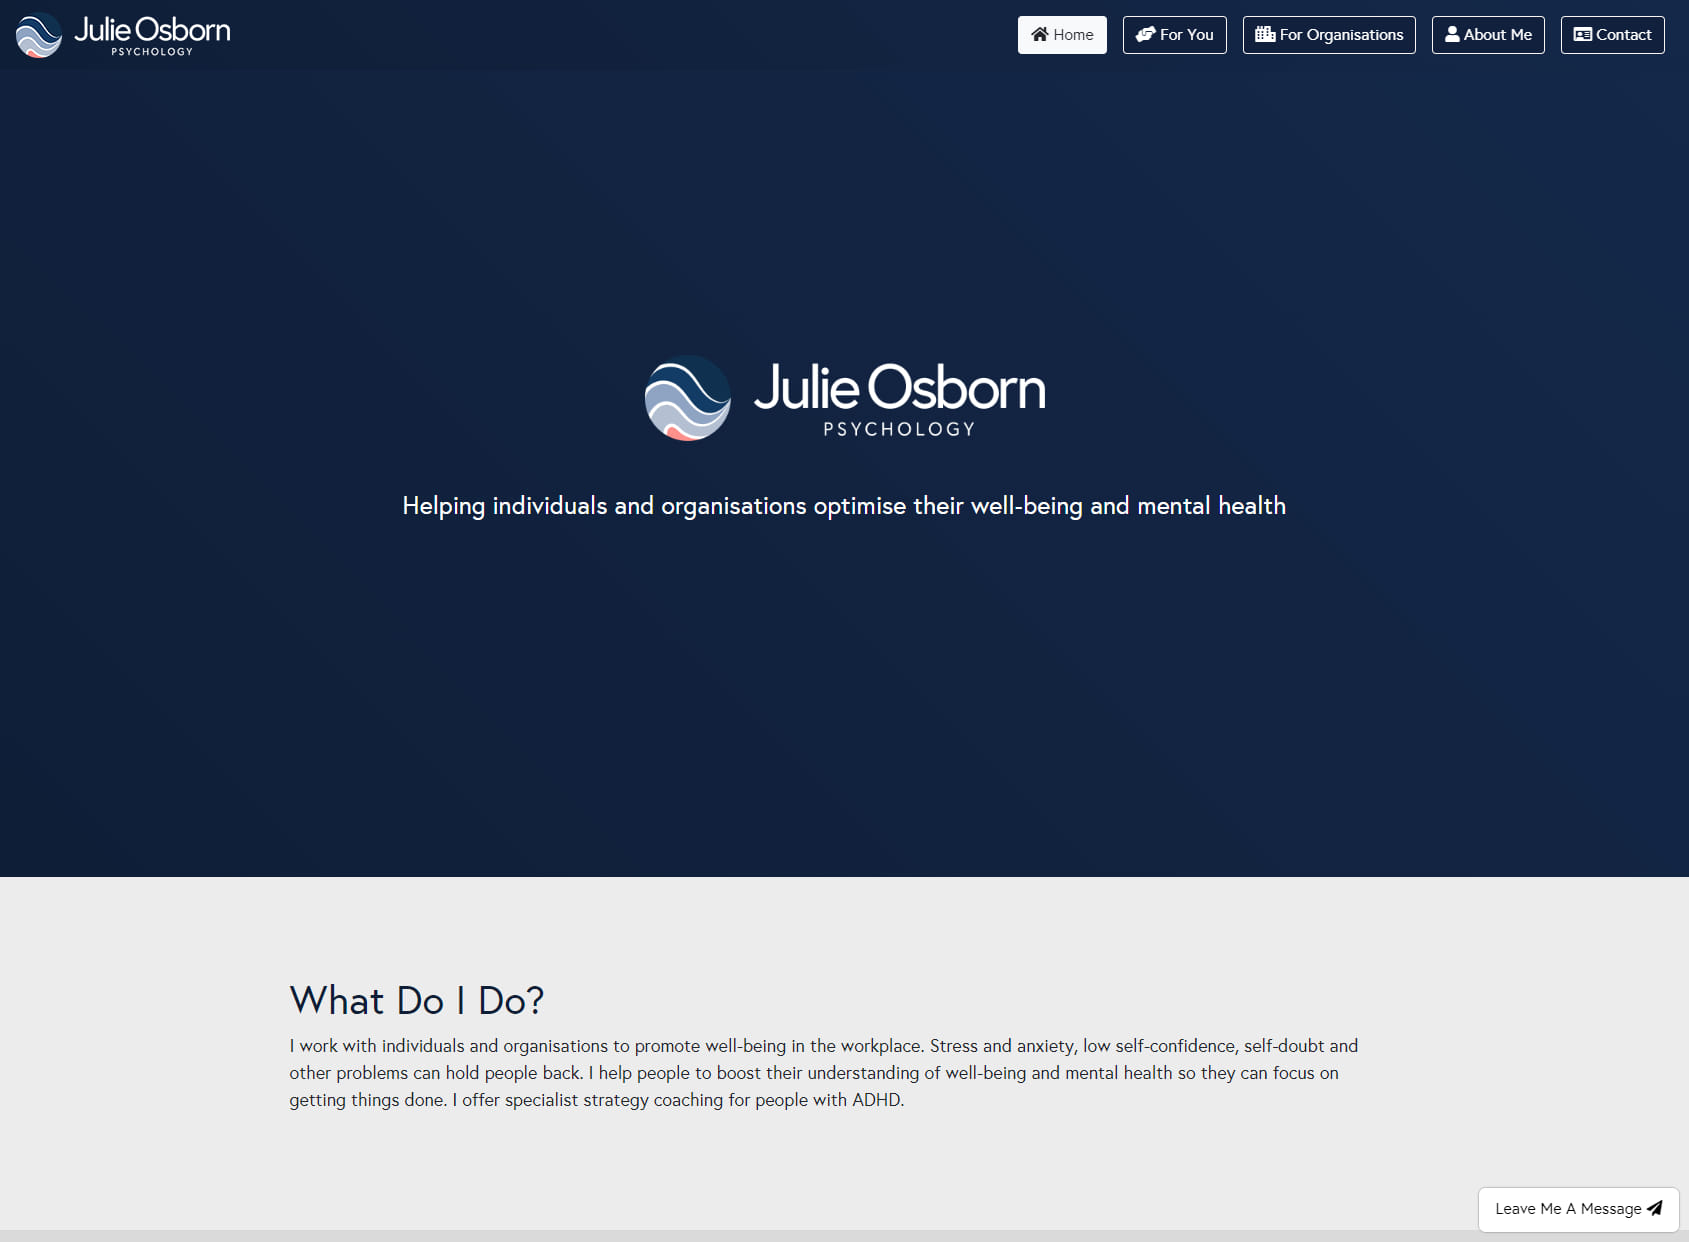 Julie Osborn Psychology Ltd.